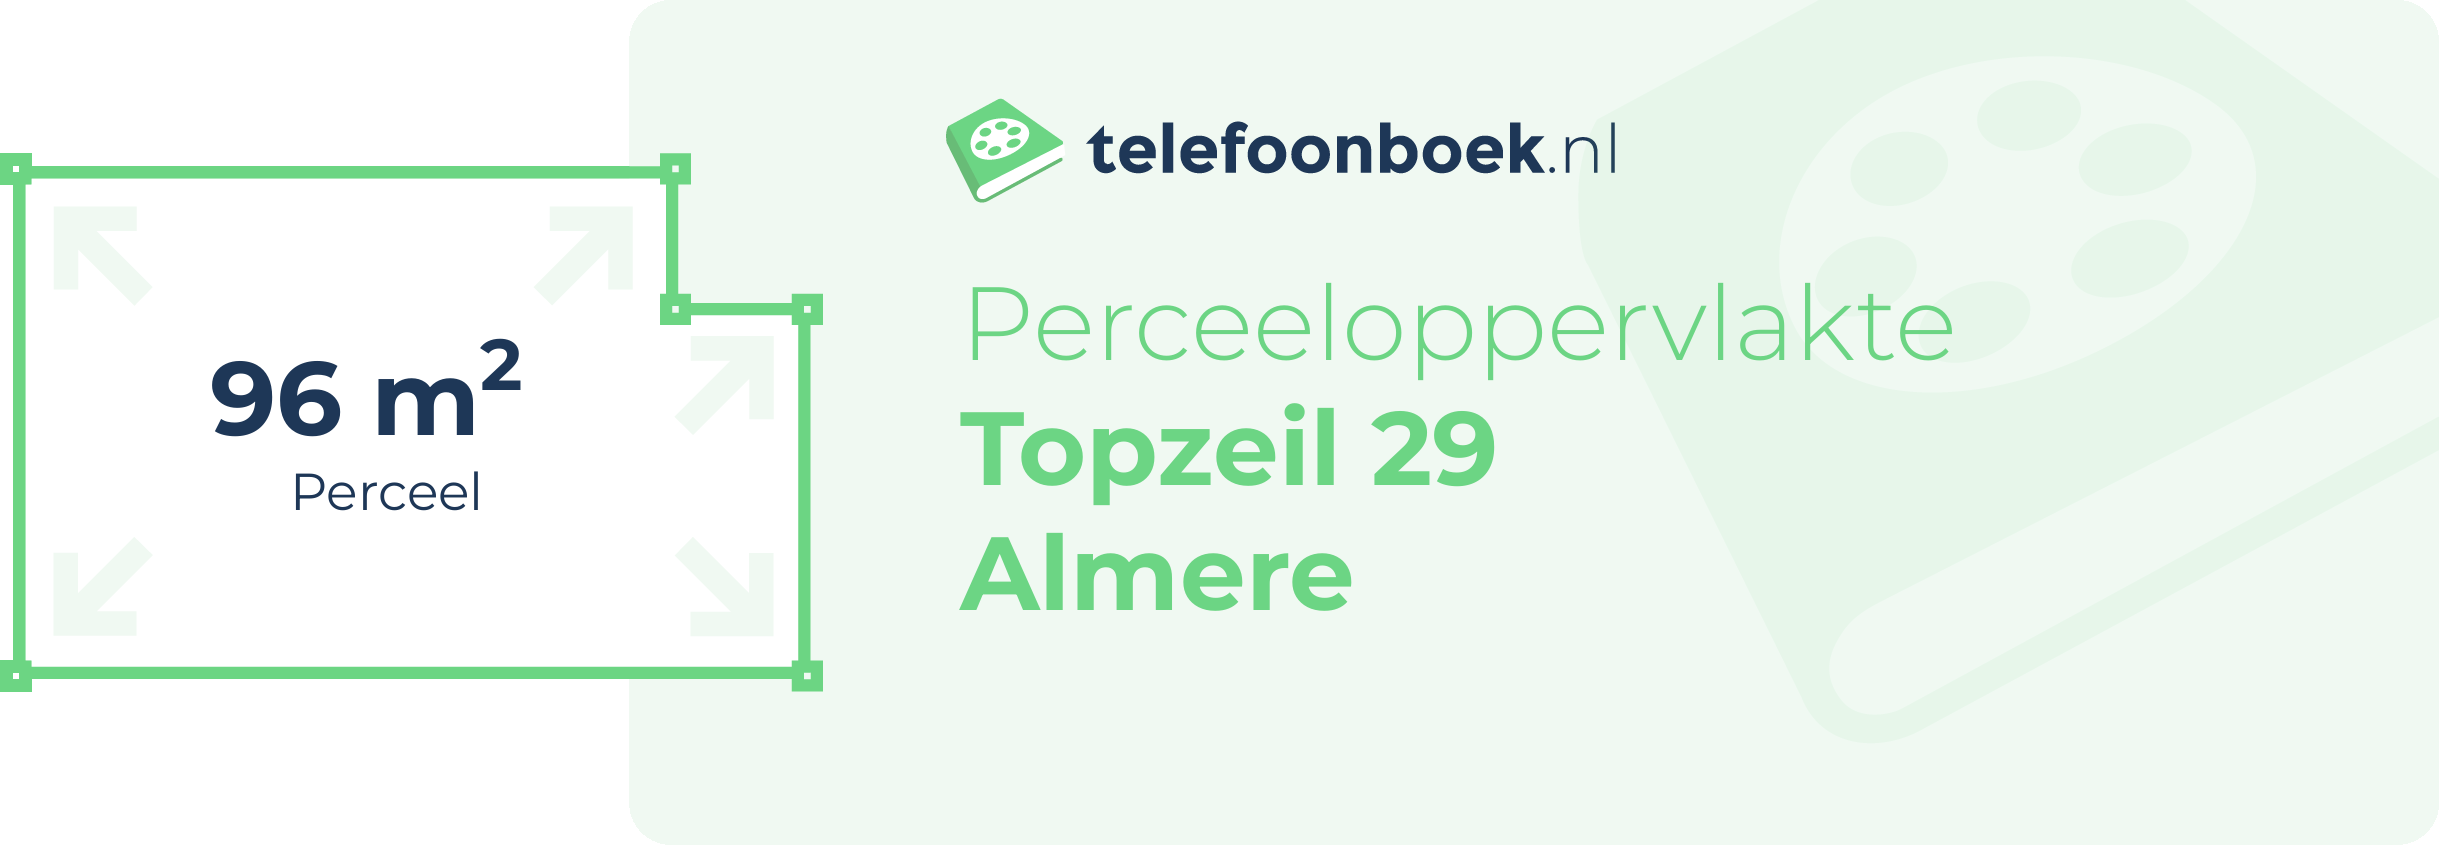 Perceeloppervlakte Topzeil 29 Almere